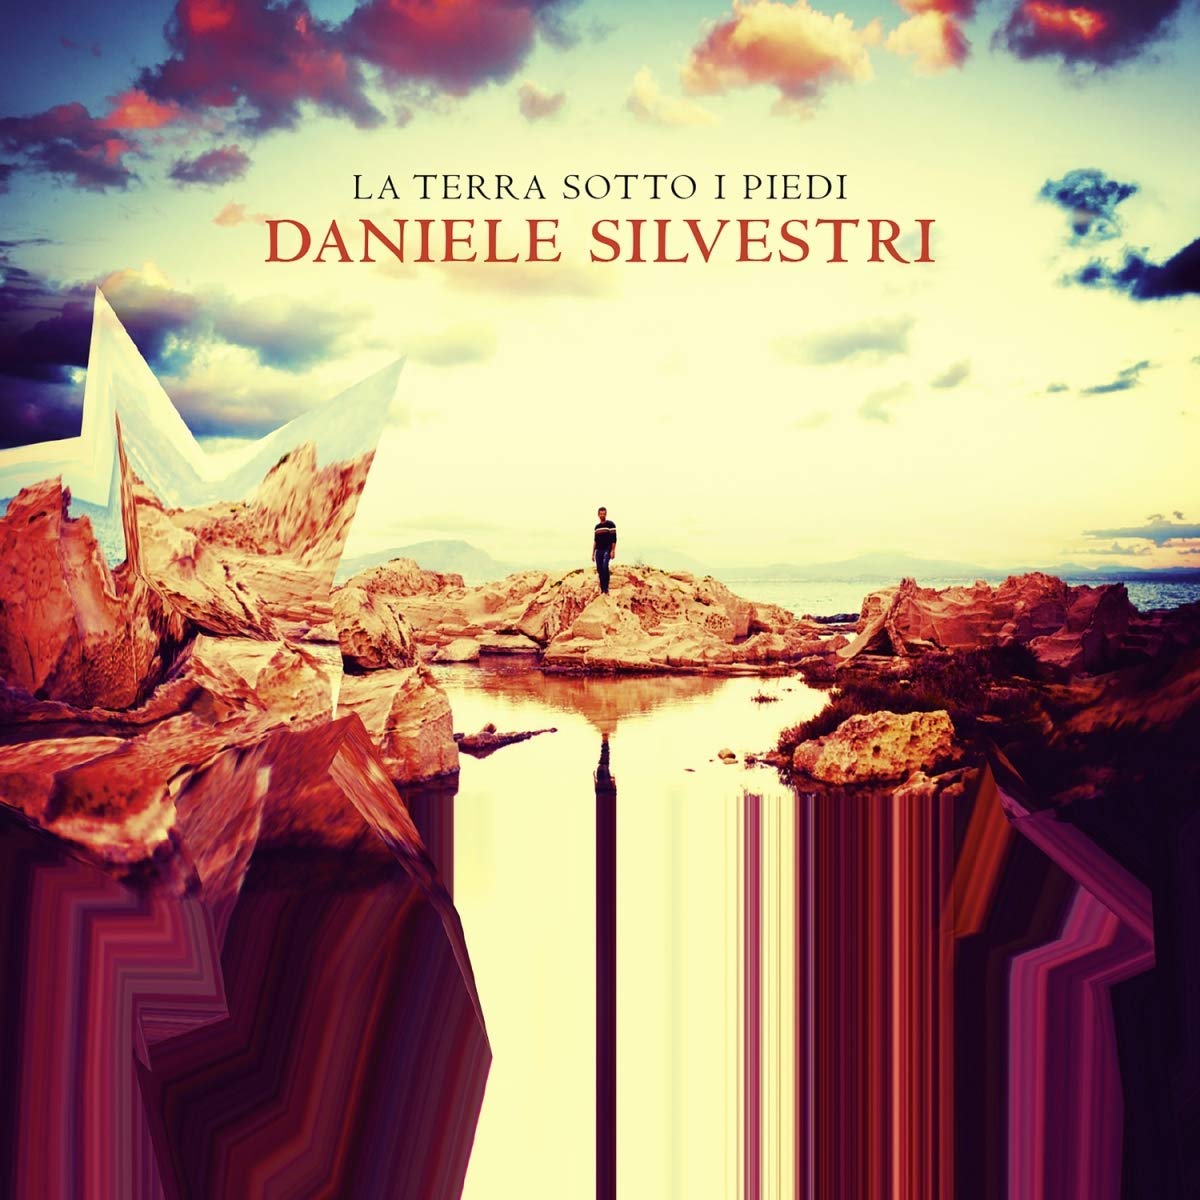 Musica Italiana, Recensioni. “La terra sotto i piedi”, Daniele Silvestri festeggia le nozze d’argento della carriera con un disco monumentale